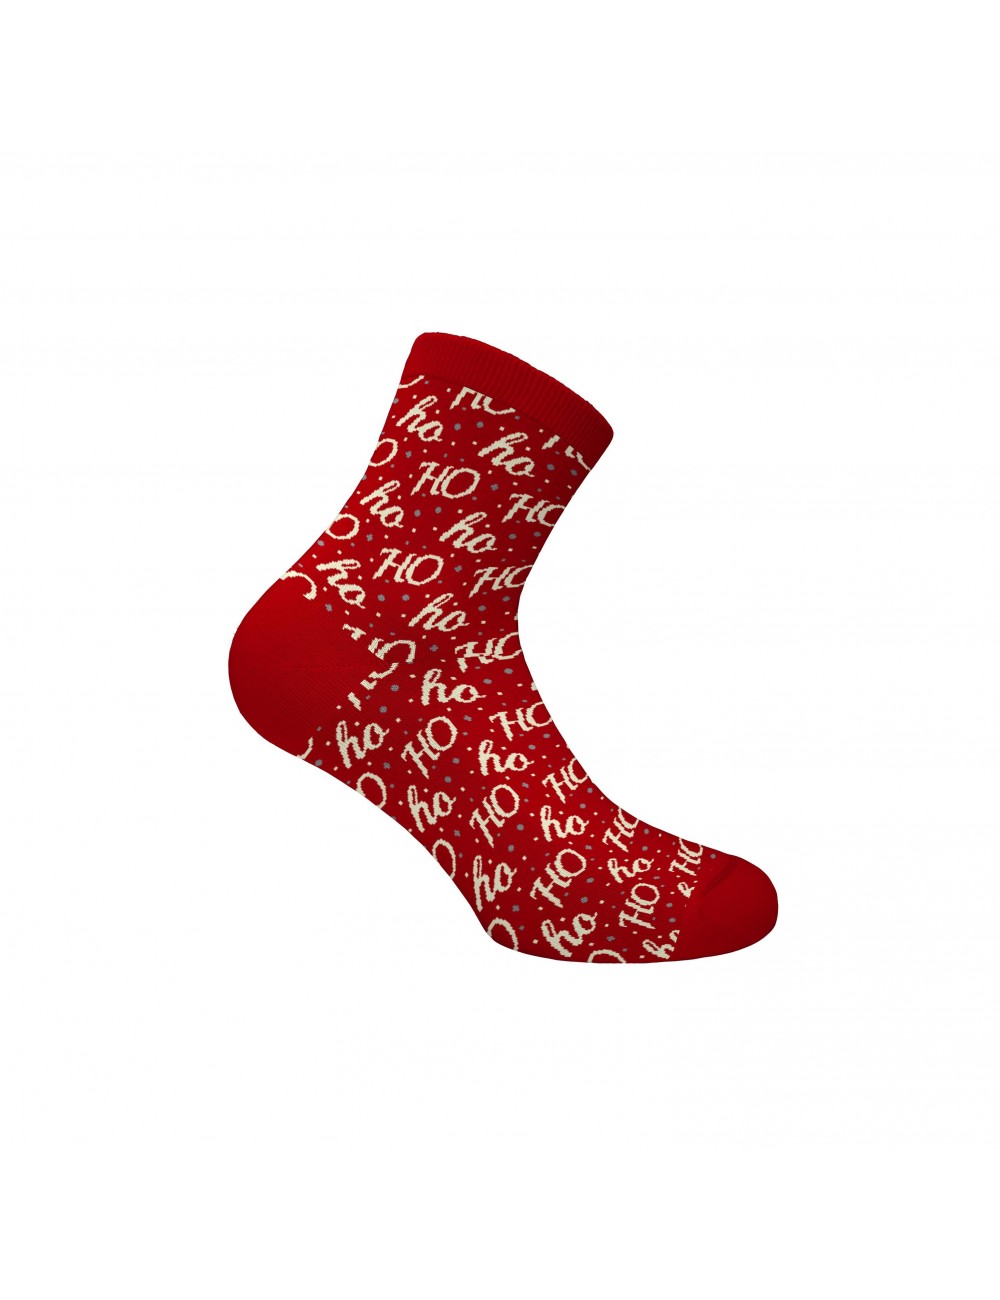 2τμχ Γυναικείες Christmas Κάλτσες Walk CHR-10 Συσκ 2 Ζεύγη Lamoda.gr